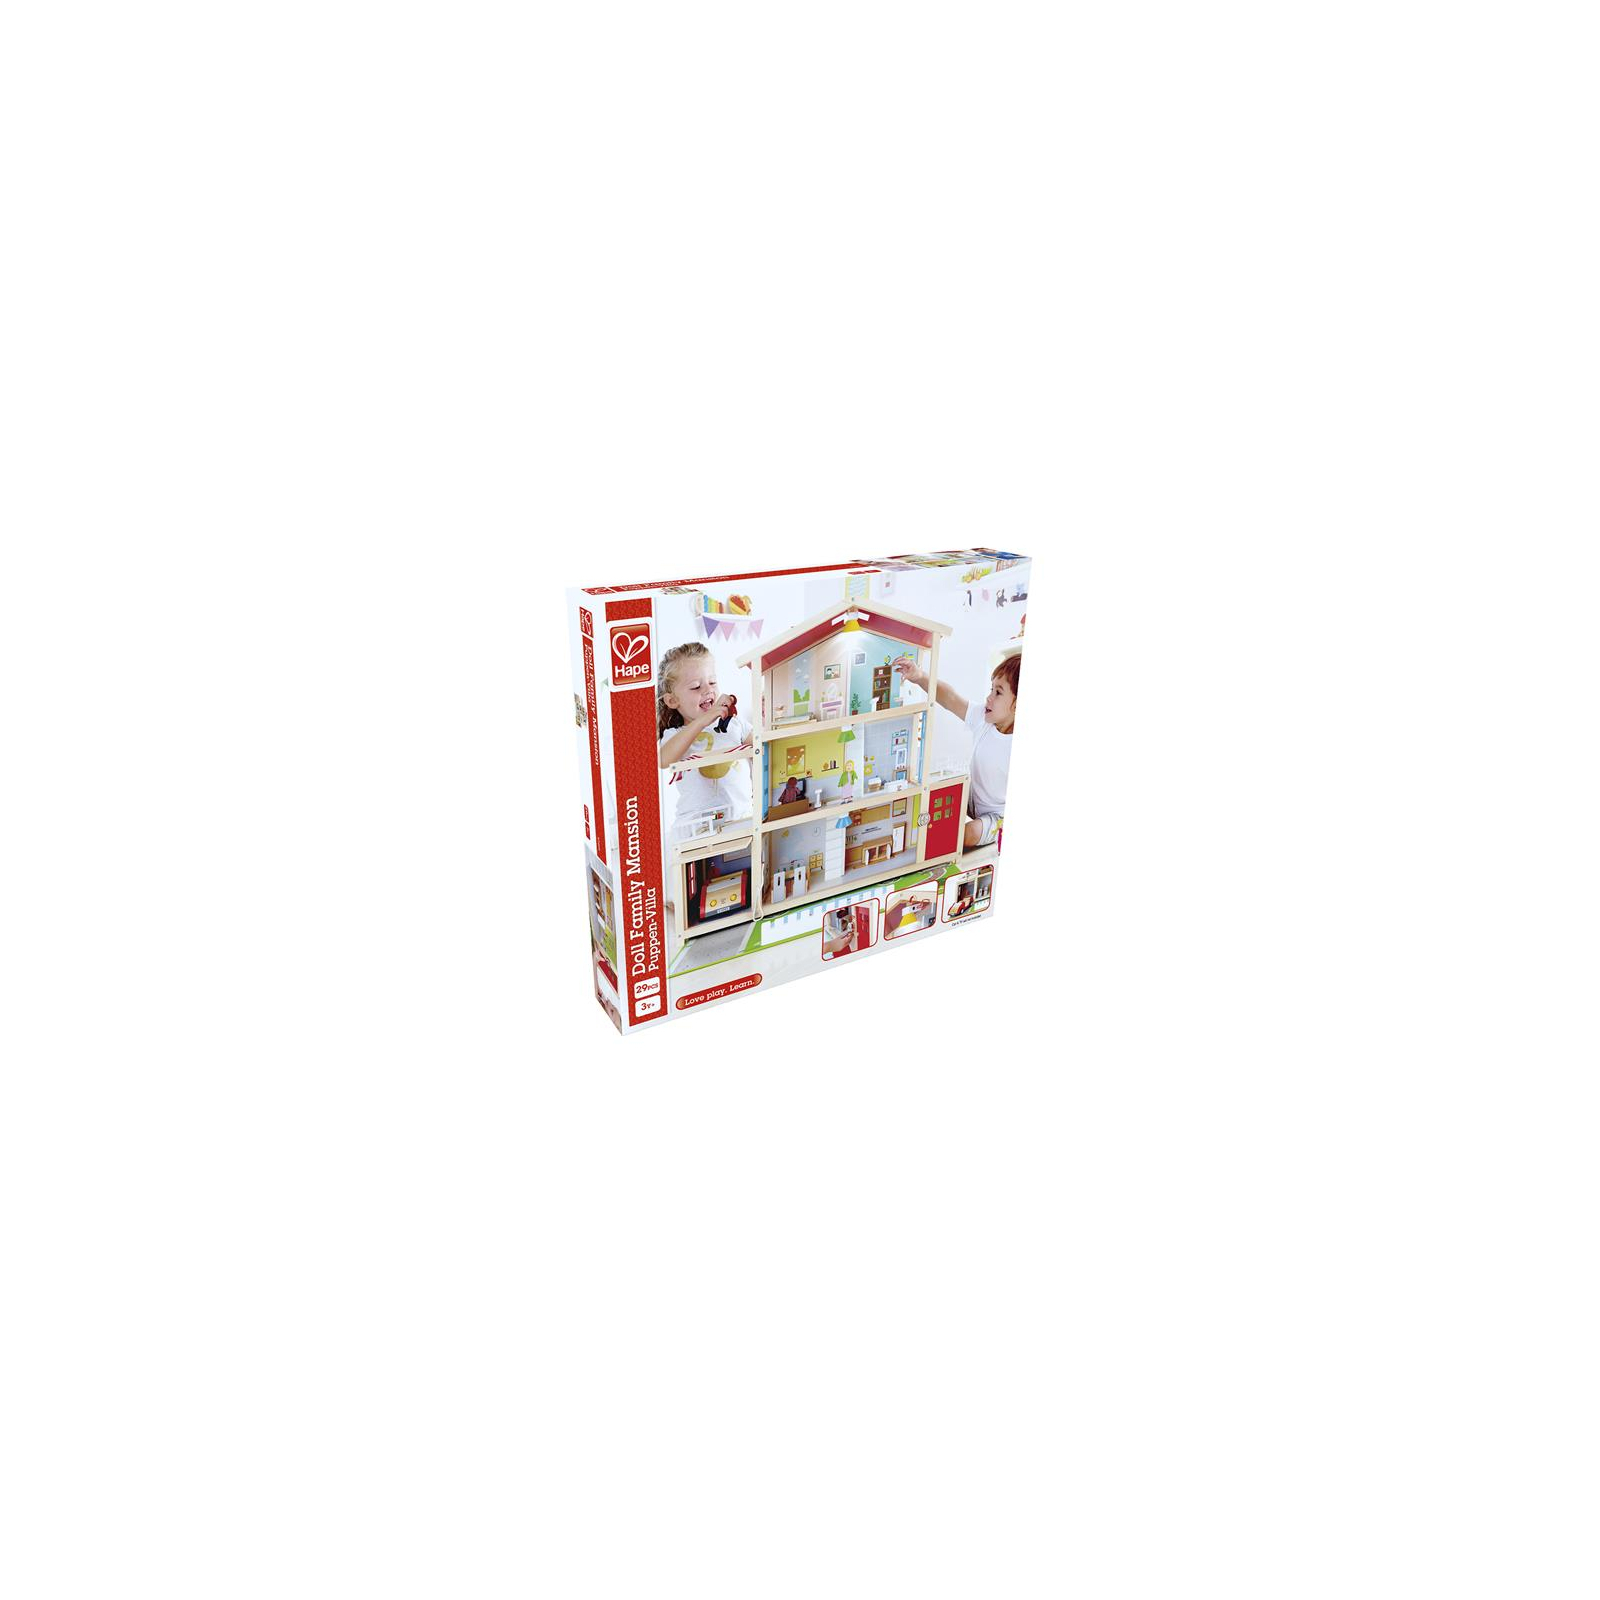 Игровой набор Hape Кукольный дом Особняк с мебелью деревянный (E3405) изображение 6